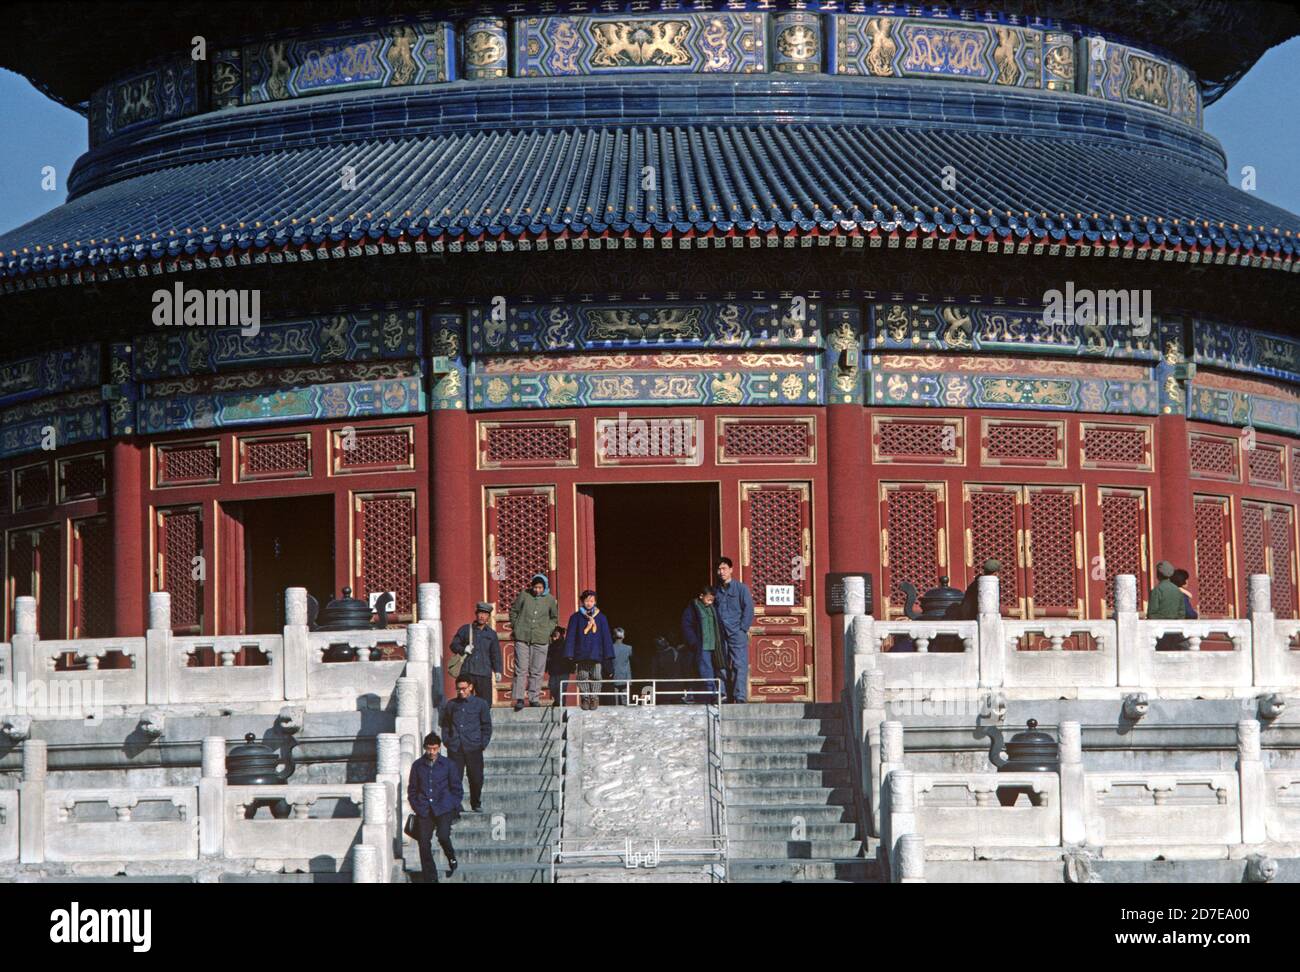 Himmelstempel erbaut in der frühen Hälfte des 15. Jahrhunderts, Peking, China, 1980er Jahre Stockfoto